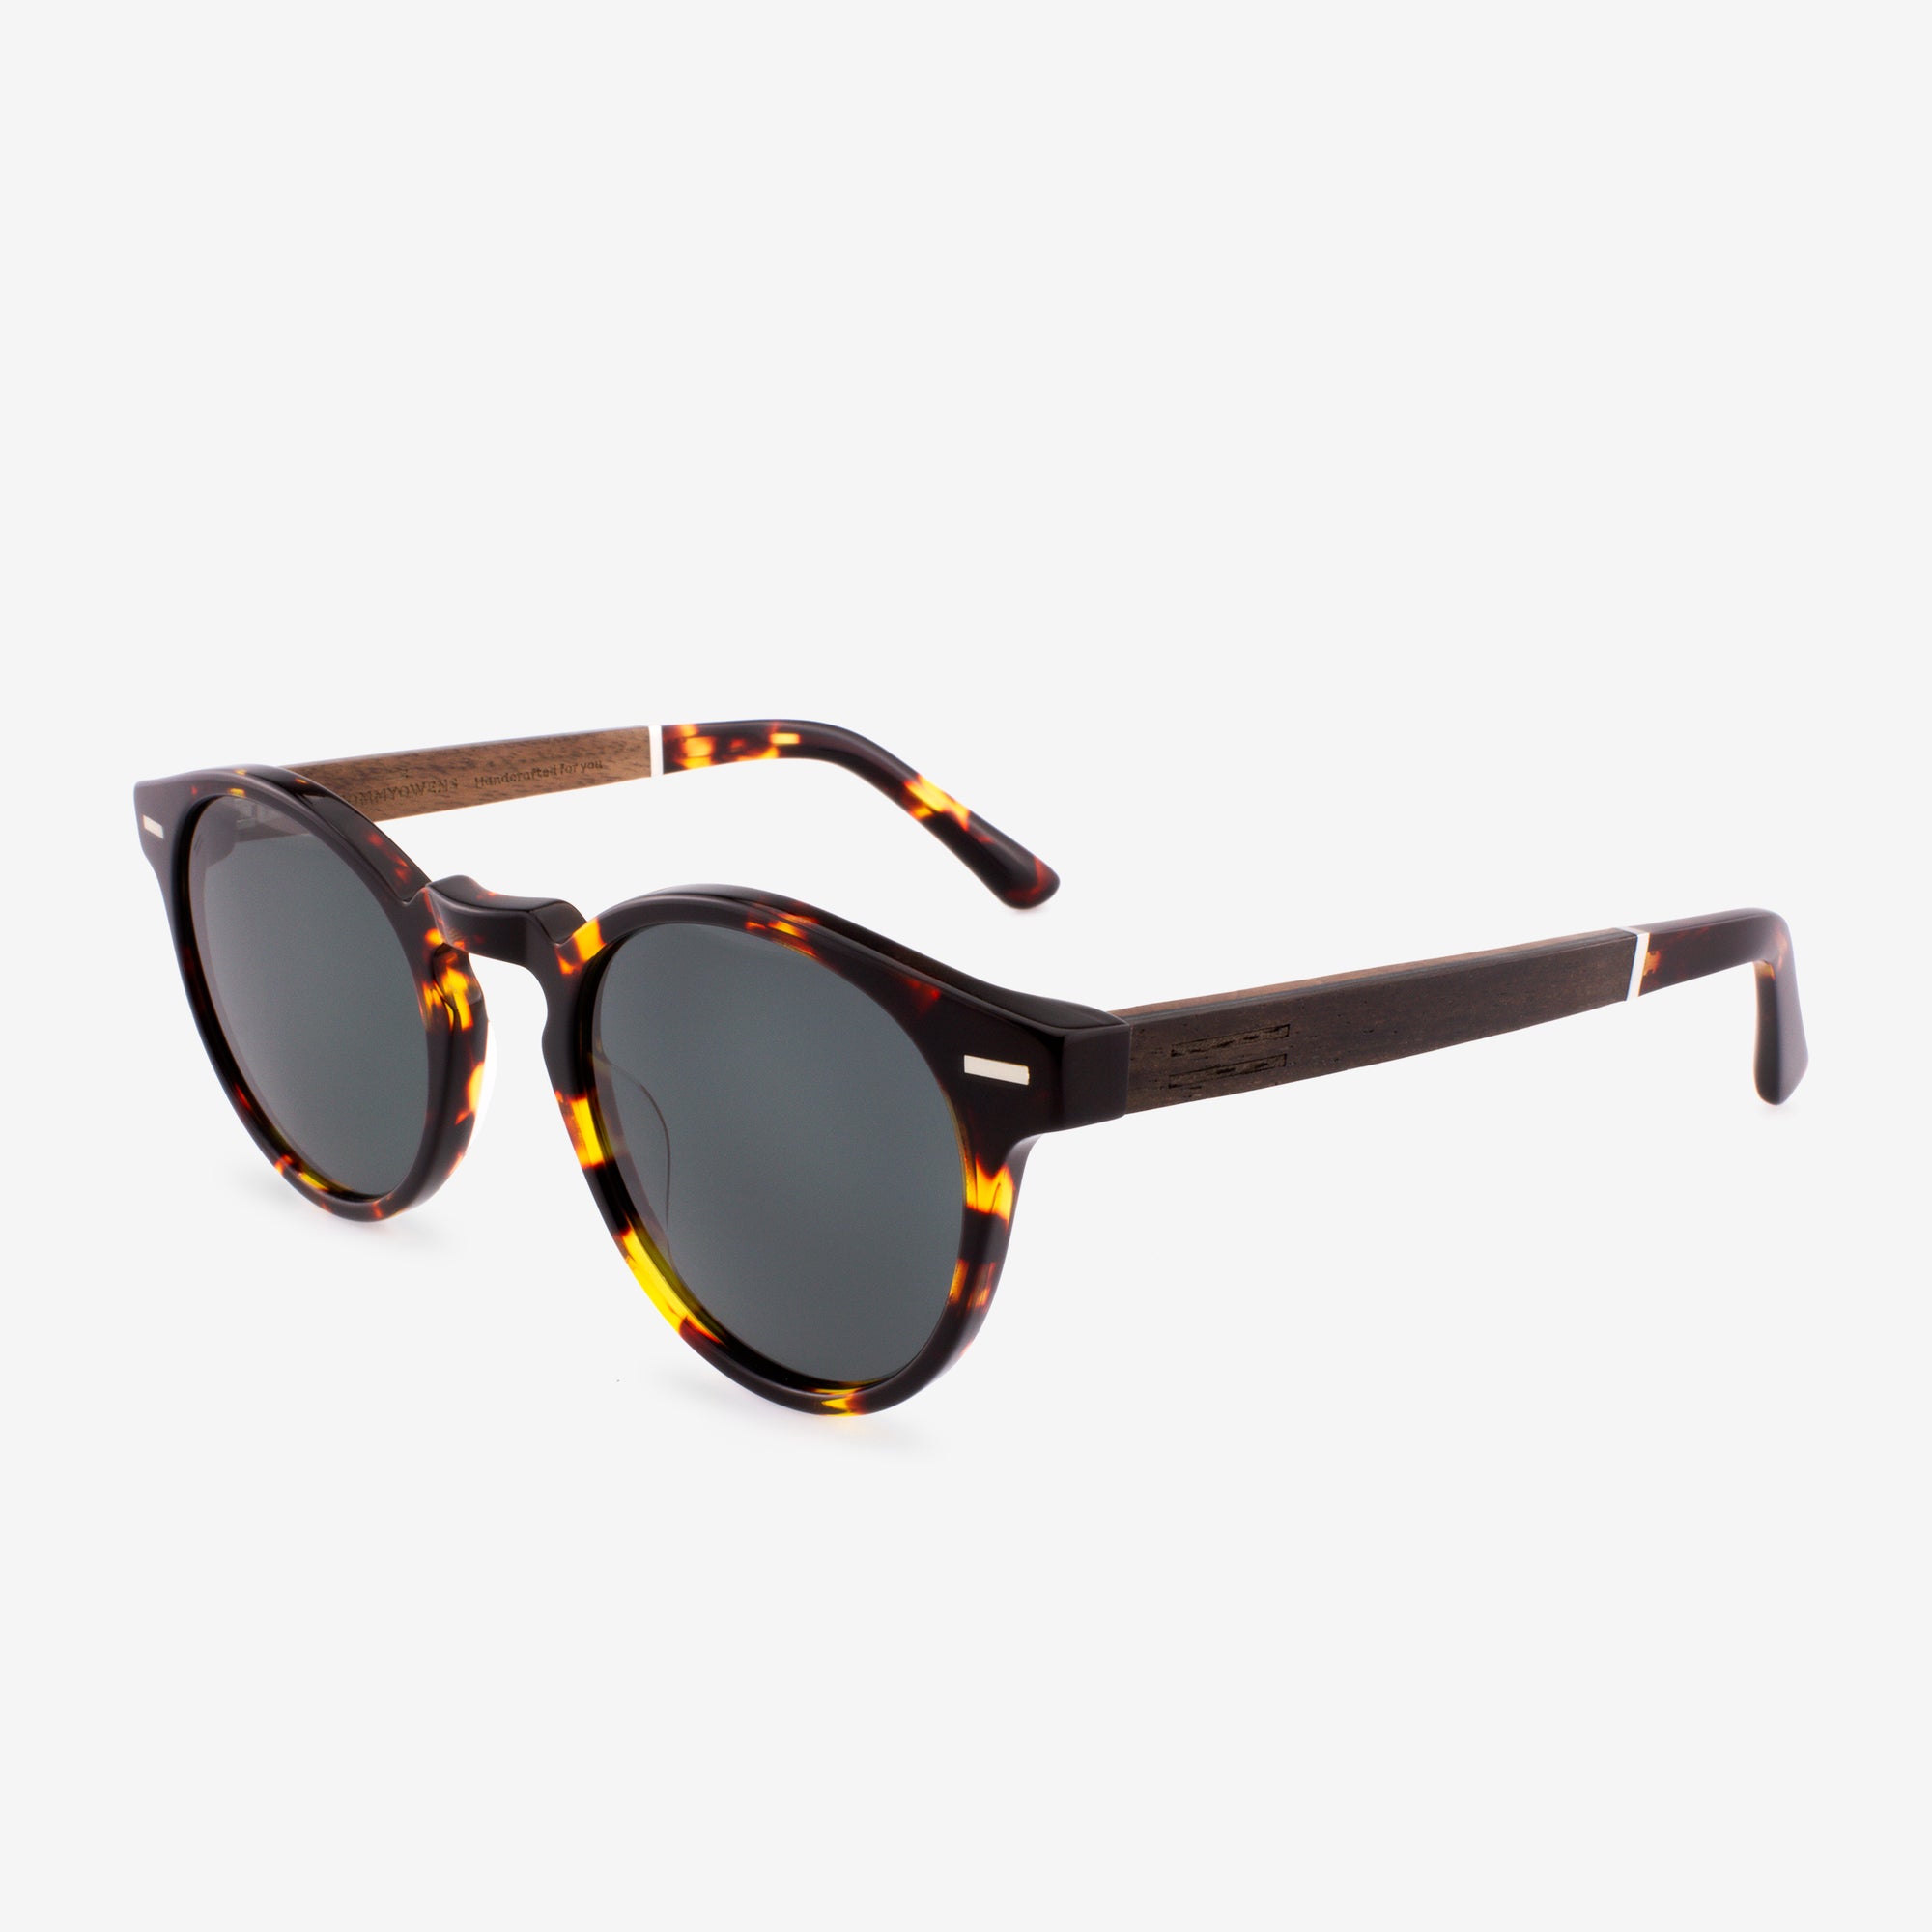 Isla - Acetate & Wood Sunglasses